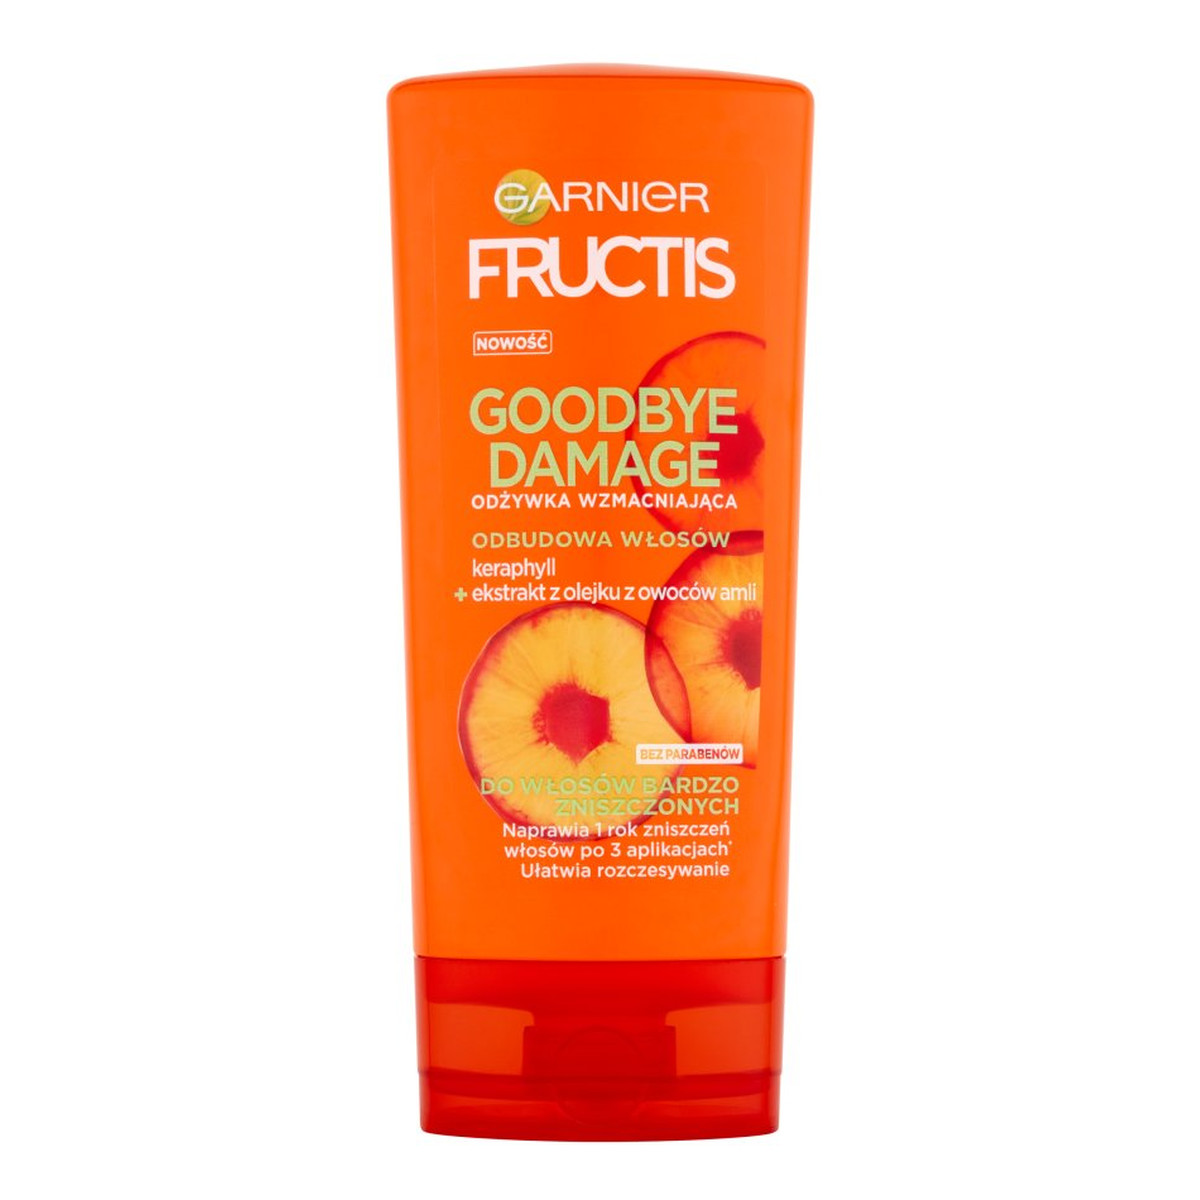 Garnier Fructis Goodbye Damage Odżywka wzmacniająca do włosów bardzo zniszczonych 200ml